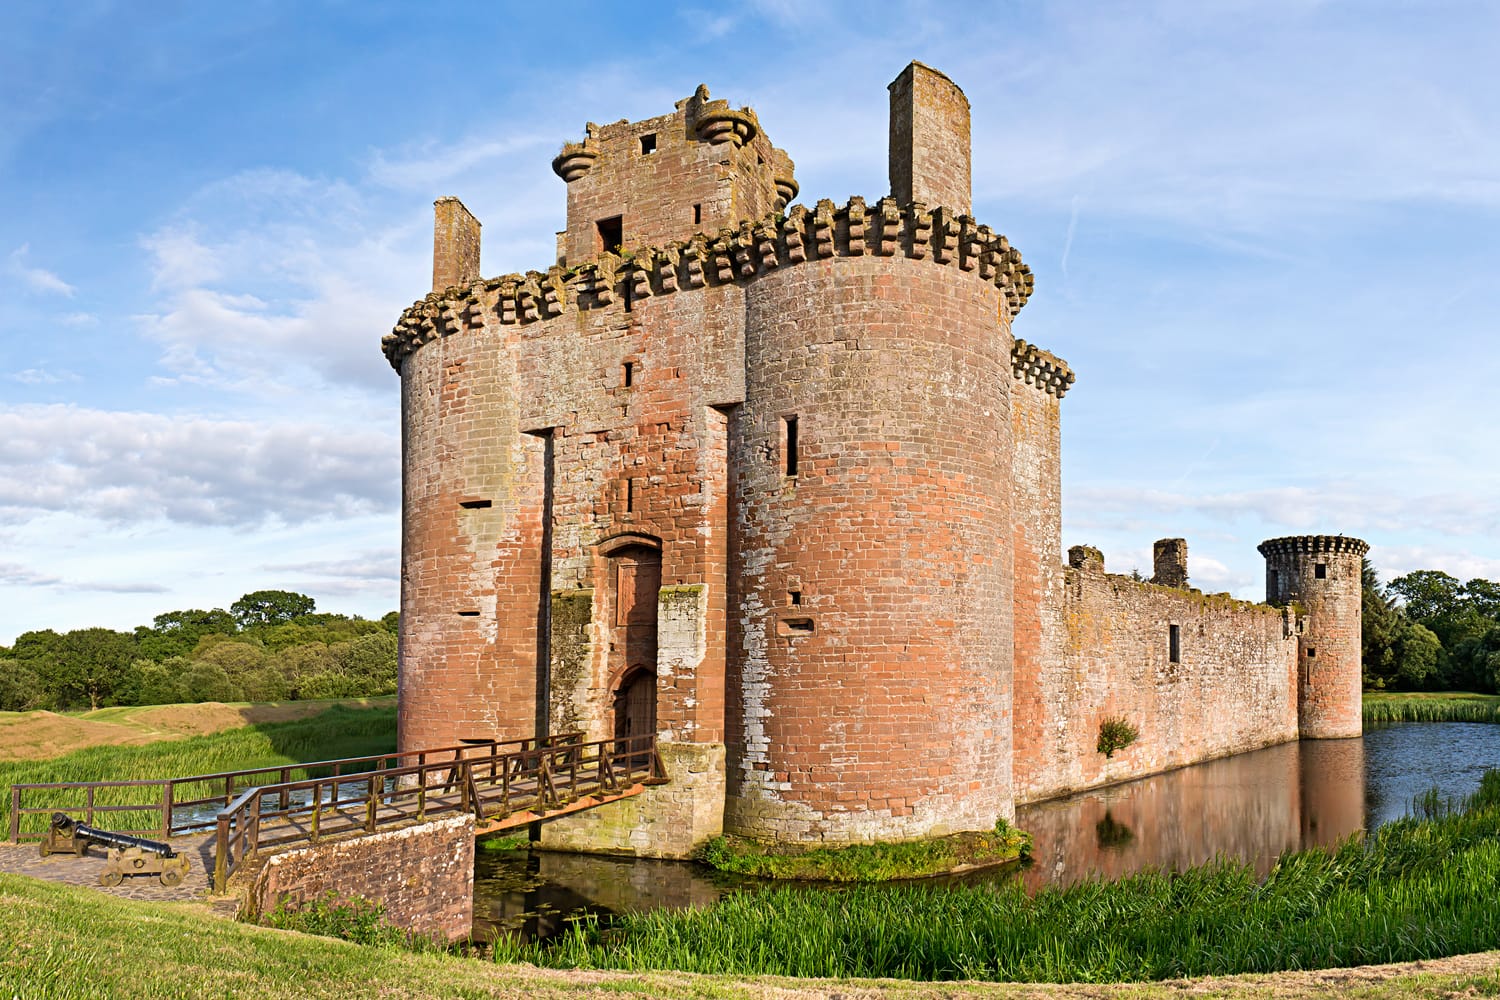 Κάστρο Caerlaverock σε μια φωτεινή ηλιόλουστη μέρα, μια ειδυλλιακή σκηνή στο Dumfries και στο Galloway κοντά στα σύνορα της Σκωτίας.